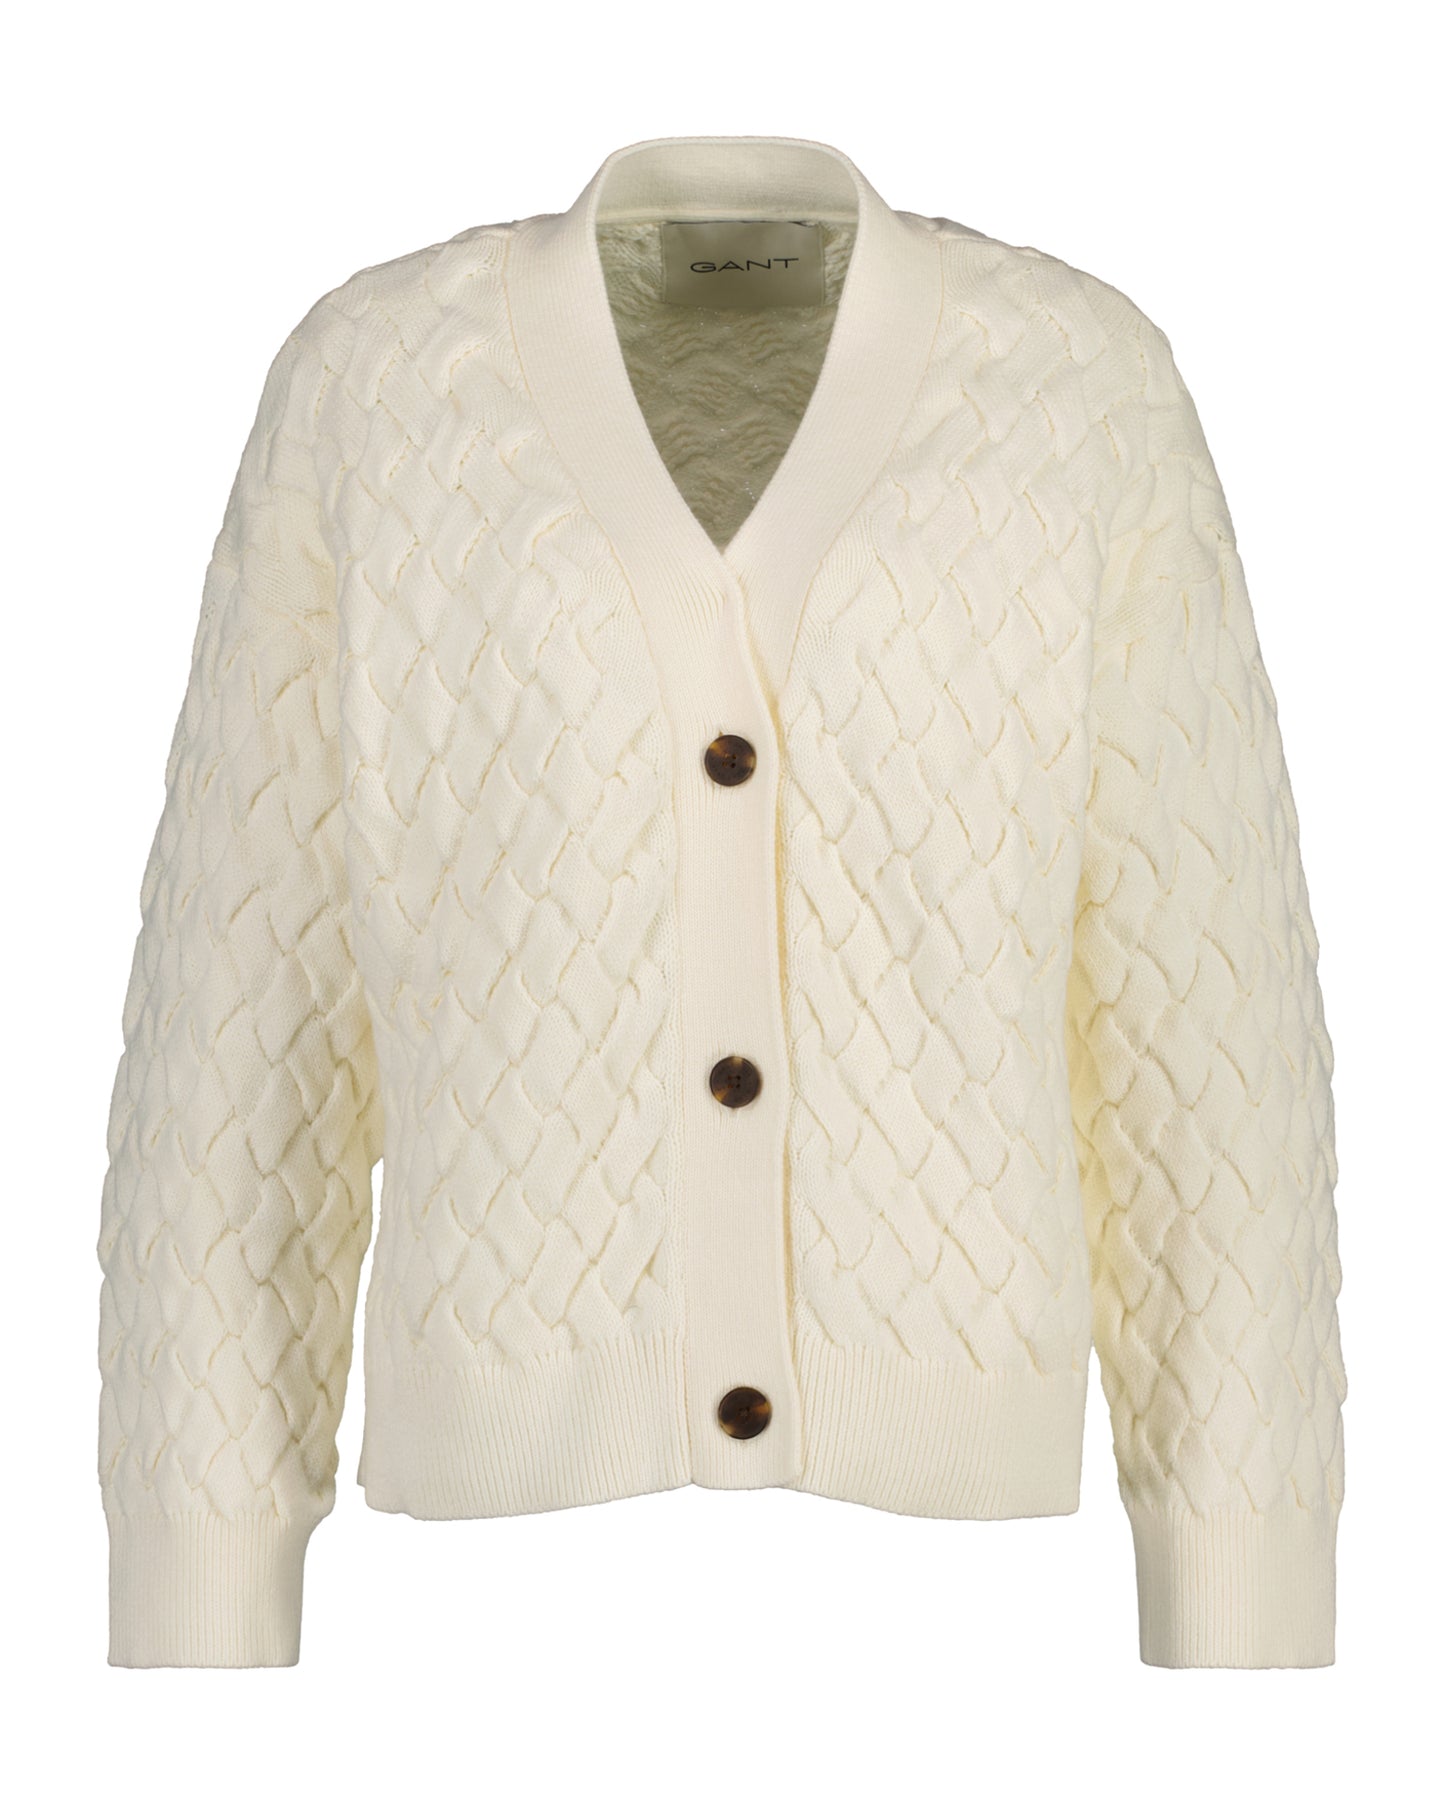 Textured Cotton Cardigan - Cream